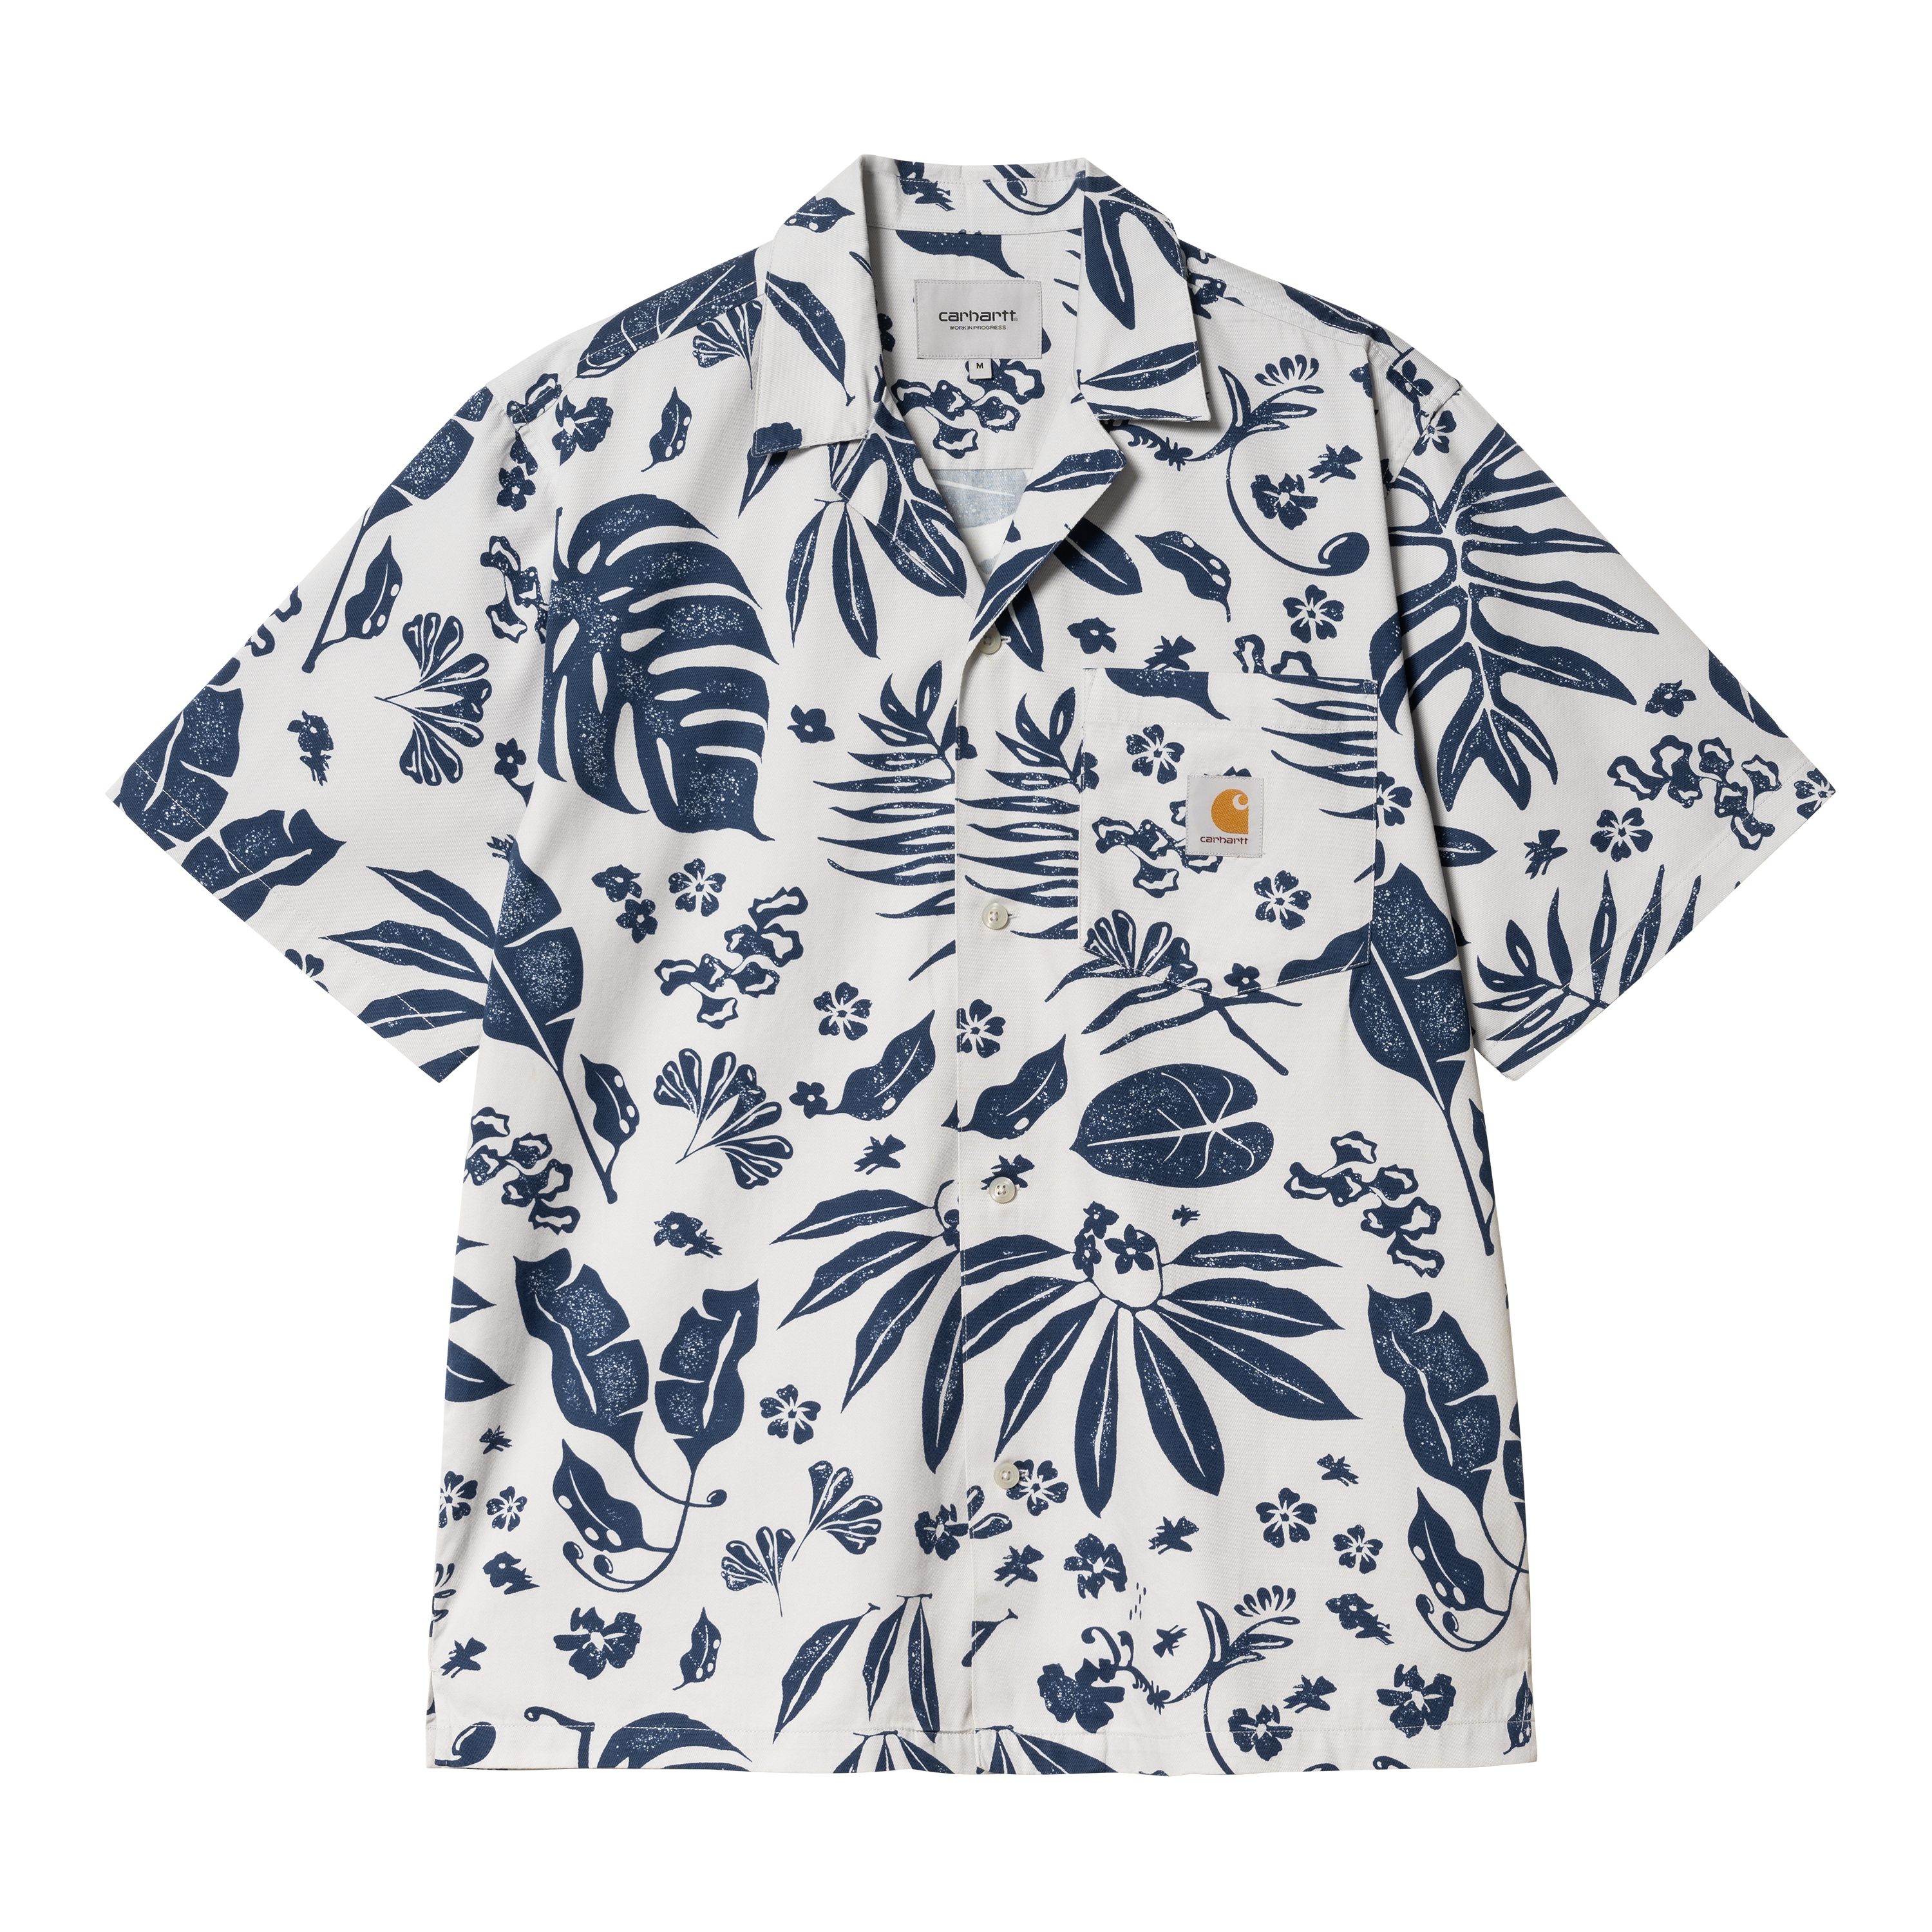 Carhartt WIP Short Sleeve Woodblock Shirt Multicolore